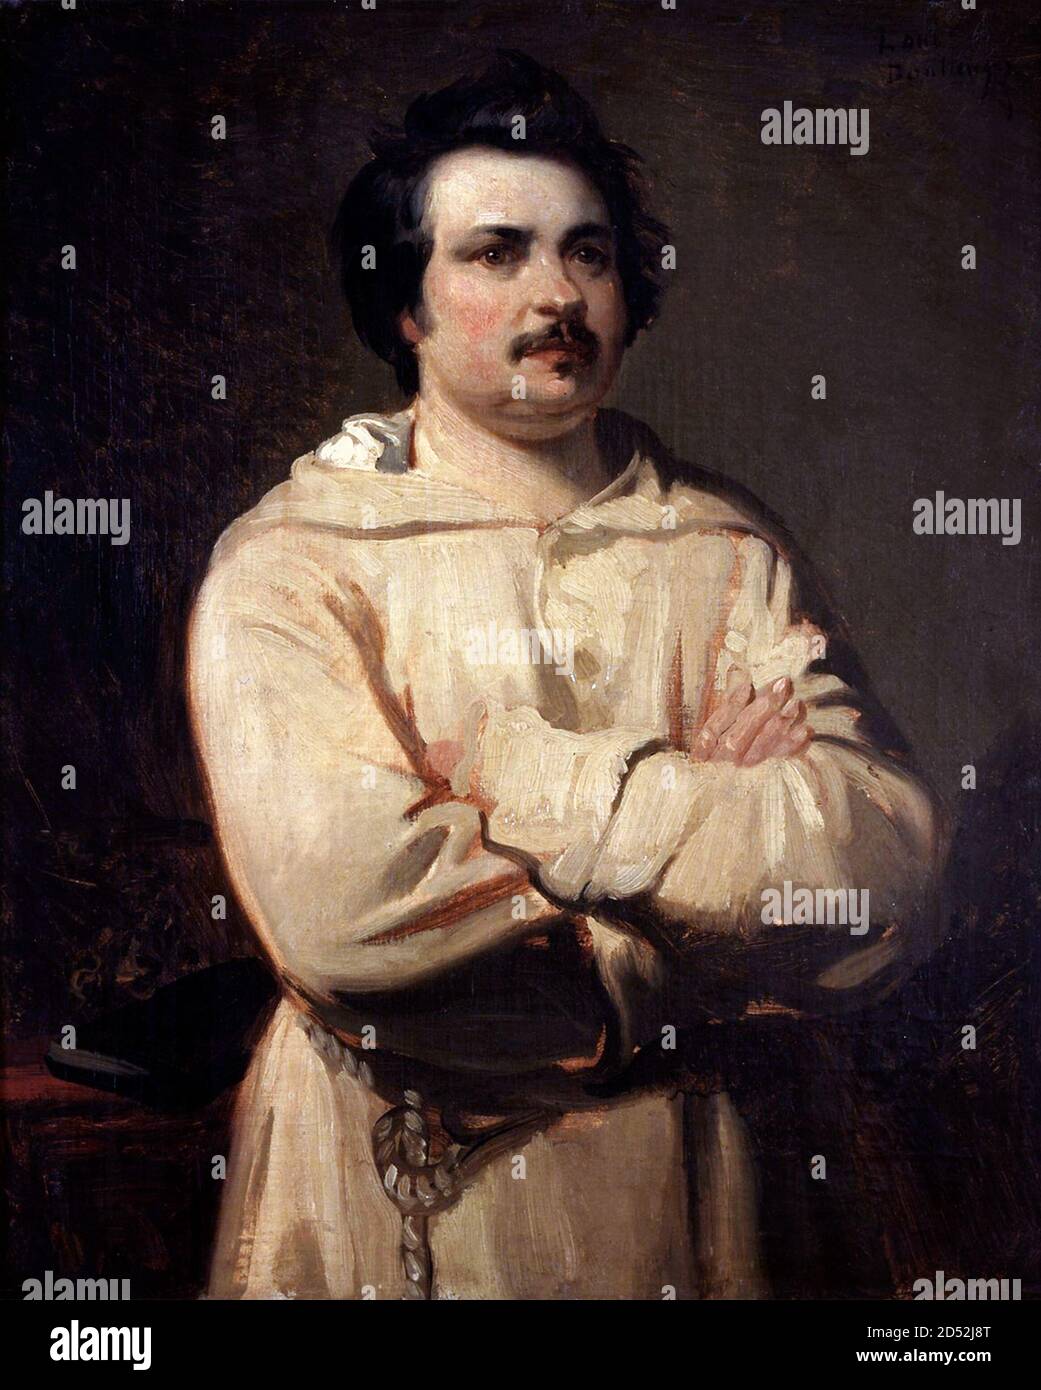 Honoré de Balzac. Porträt des französischen Schriftstellers und Dramatikers, Honoré de Balzac (1799-1850) von Louis Boulanger, Öl auf Leinwand, um 1837 Stockfoto